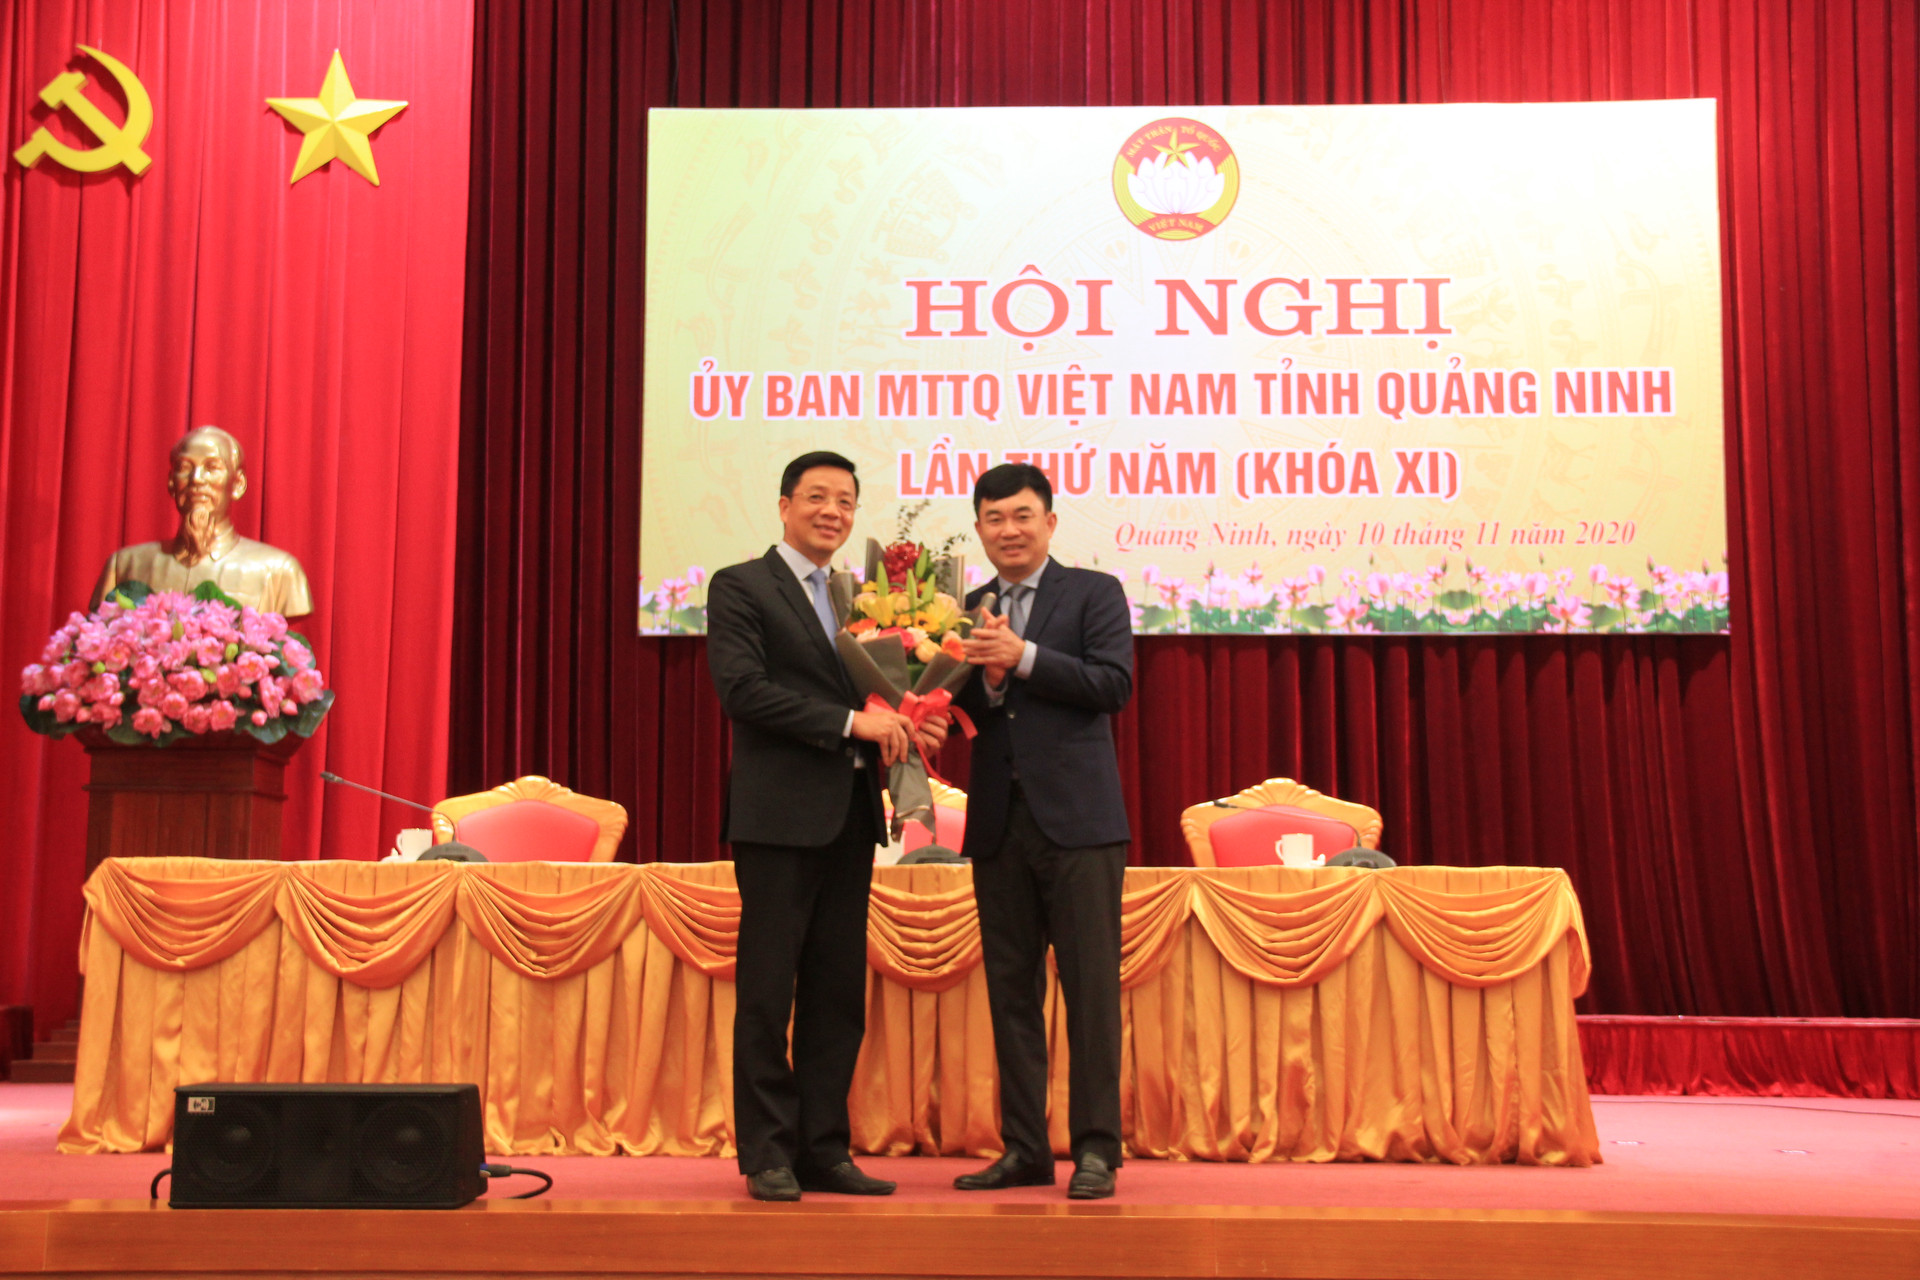 đồng chí Ngô Hoàng Ngân tặng hoa chúc mừng đồng chí Nguyễn Văn Hồi được bầu làm Chủ tịch Ủy ban MTTQ tỉnh Quảng Ninh